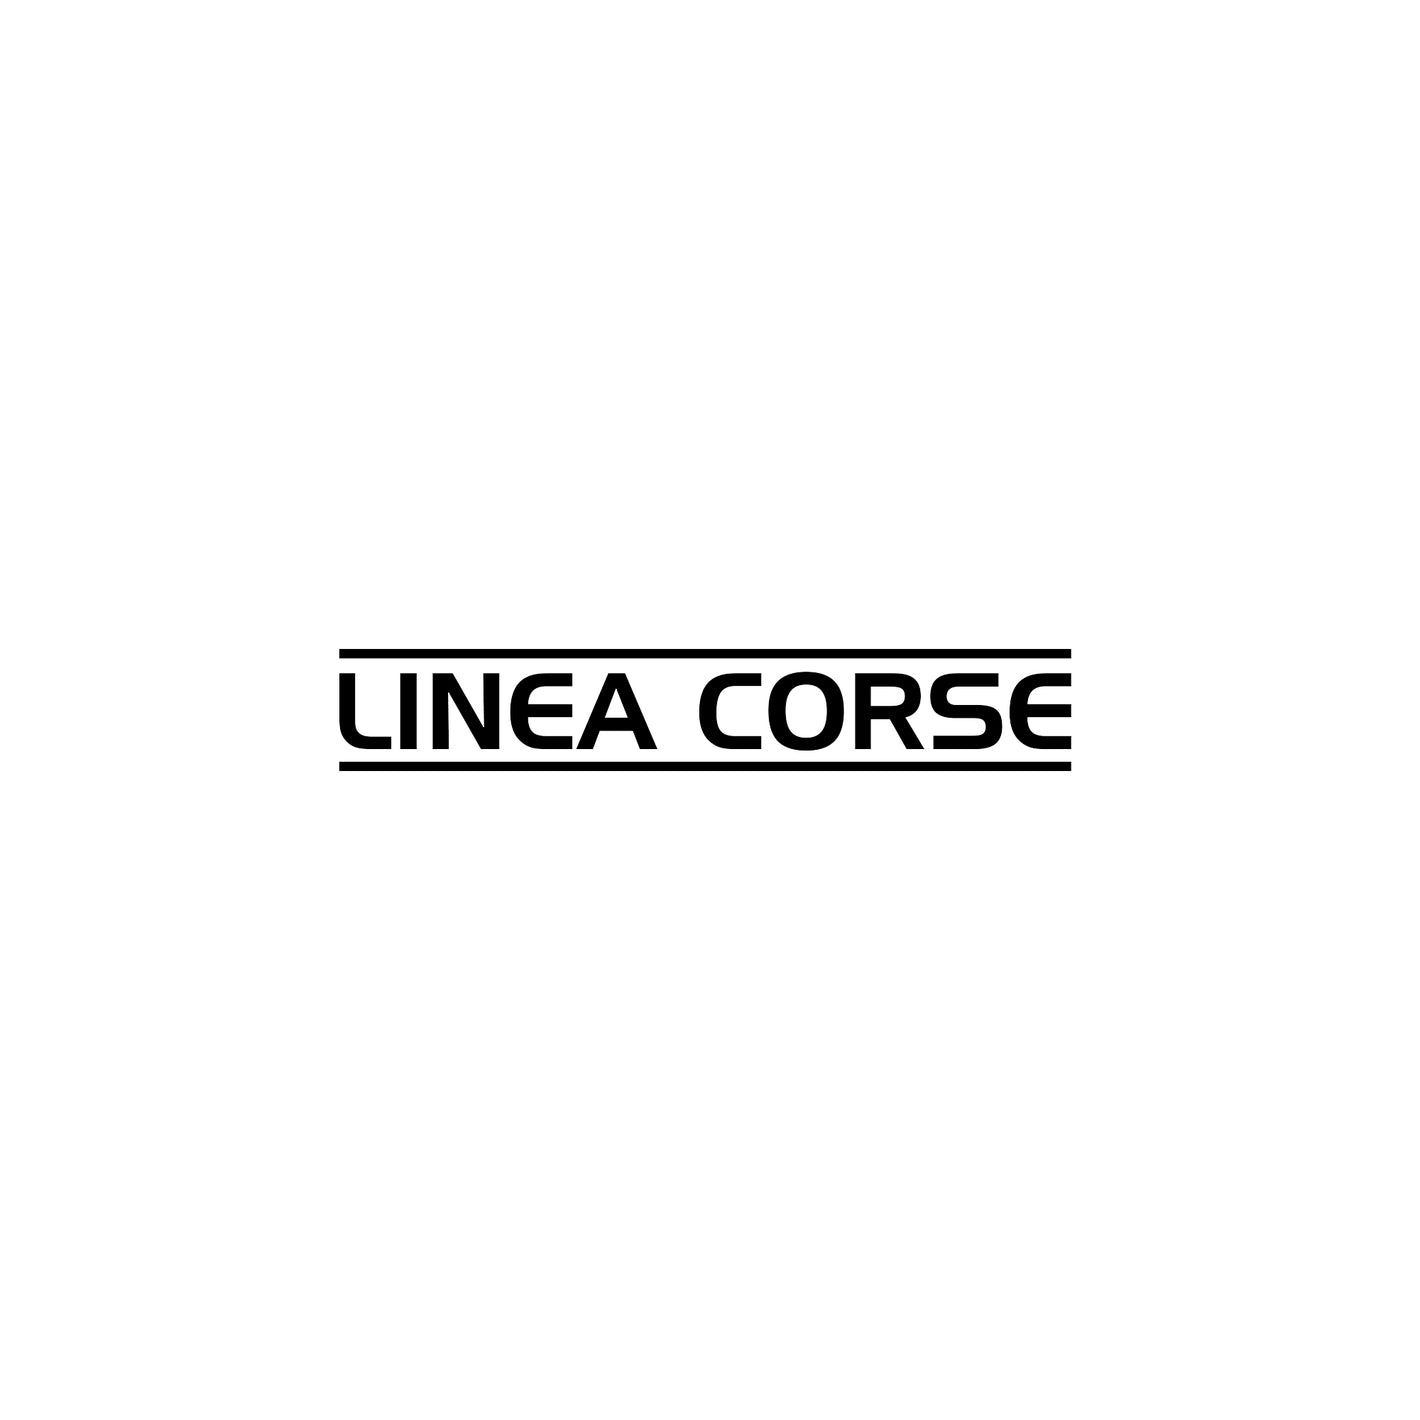 All Linea Corse Wheels